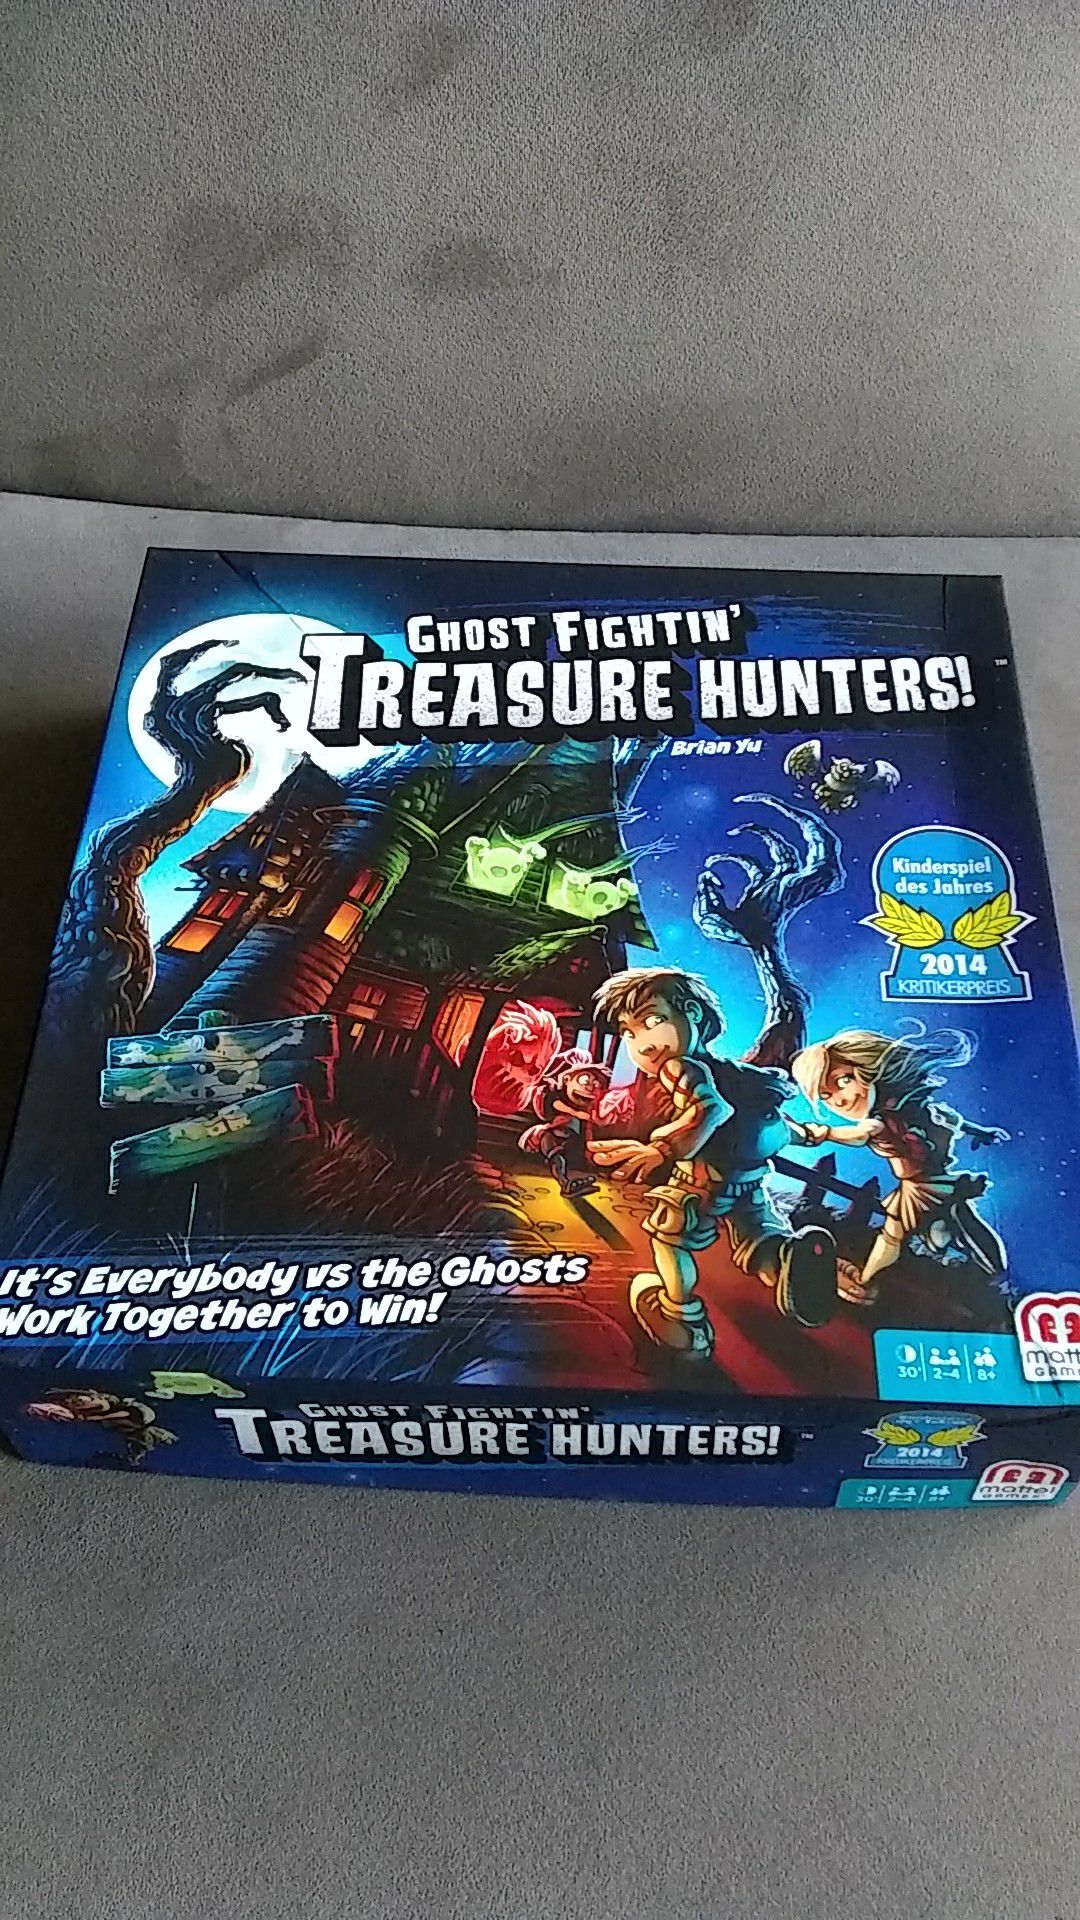 Ghost fightin' treasure hunters board game